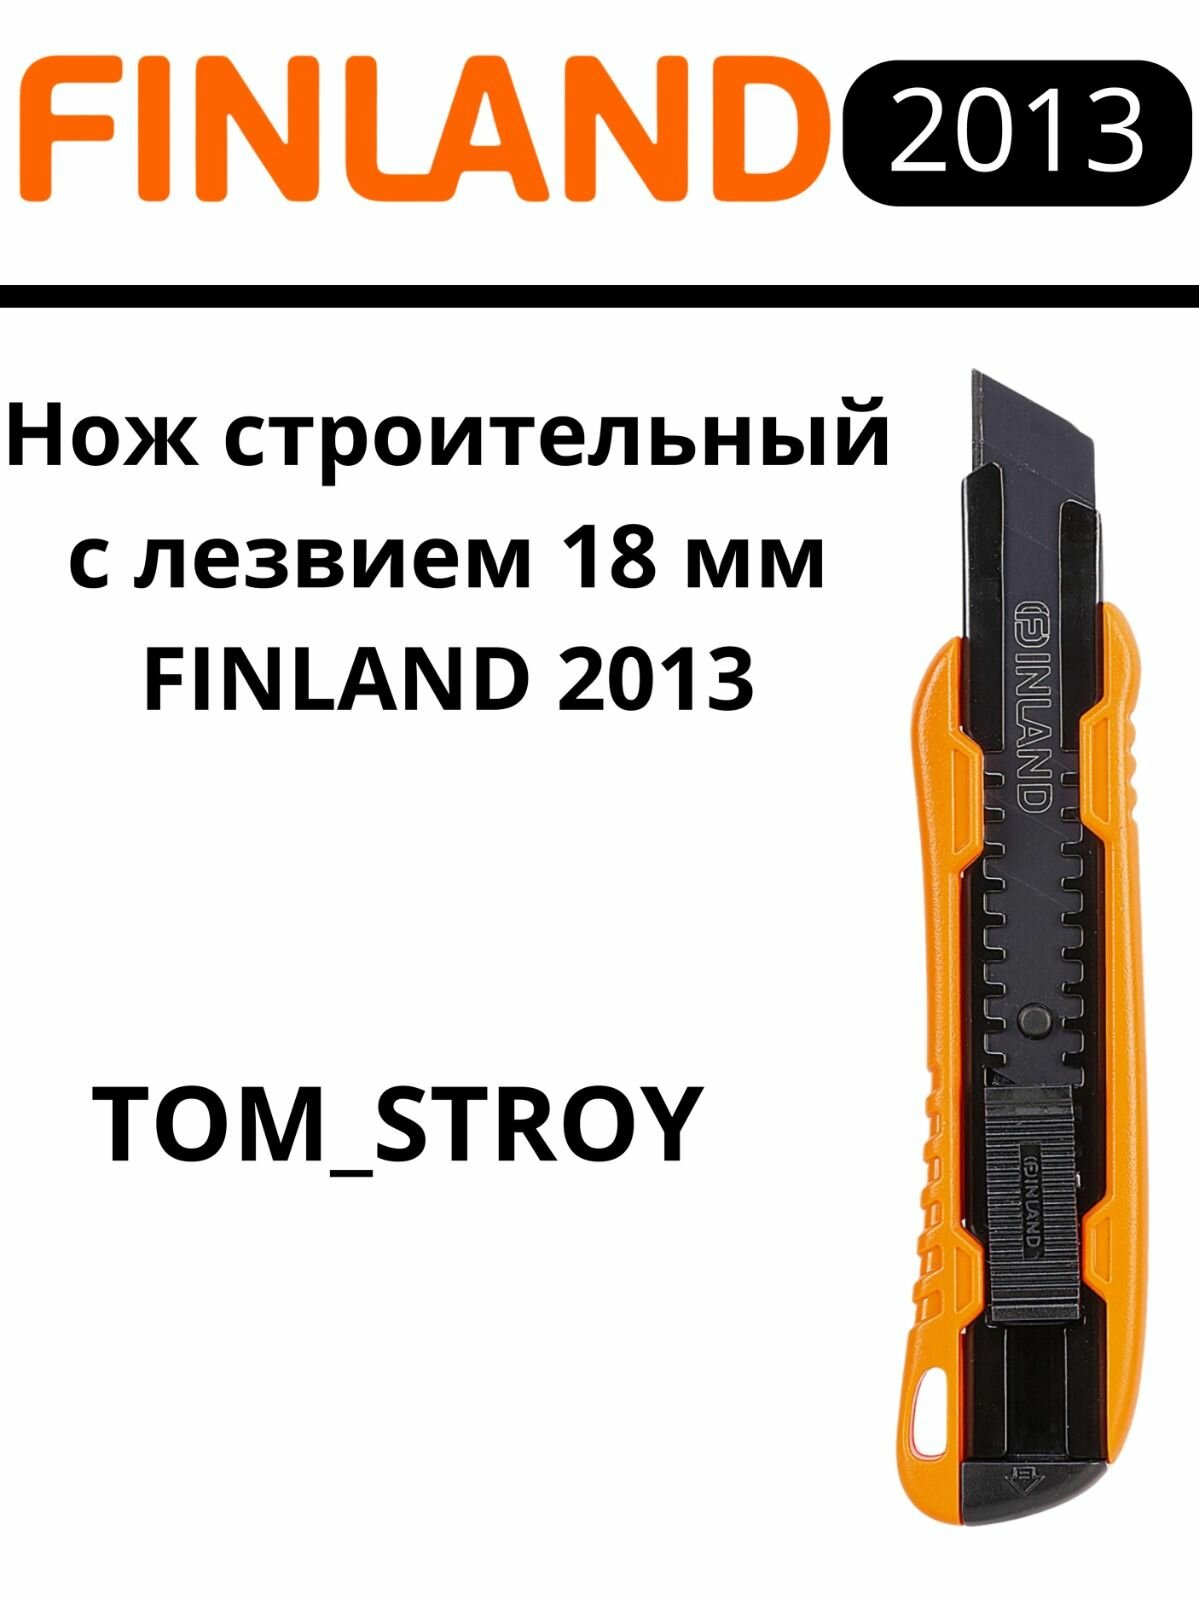 Нож канцелярский строительный 18 мм Finland вороненное лезвие для бумаги, картона, кожи, гипсокартона, оранжевый, 1шт